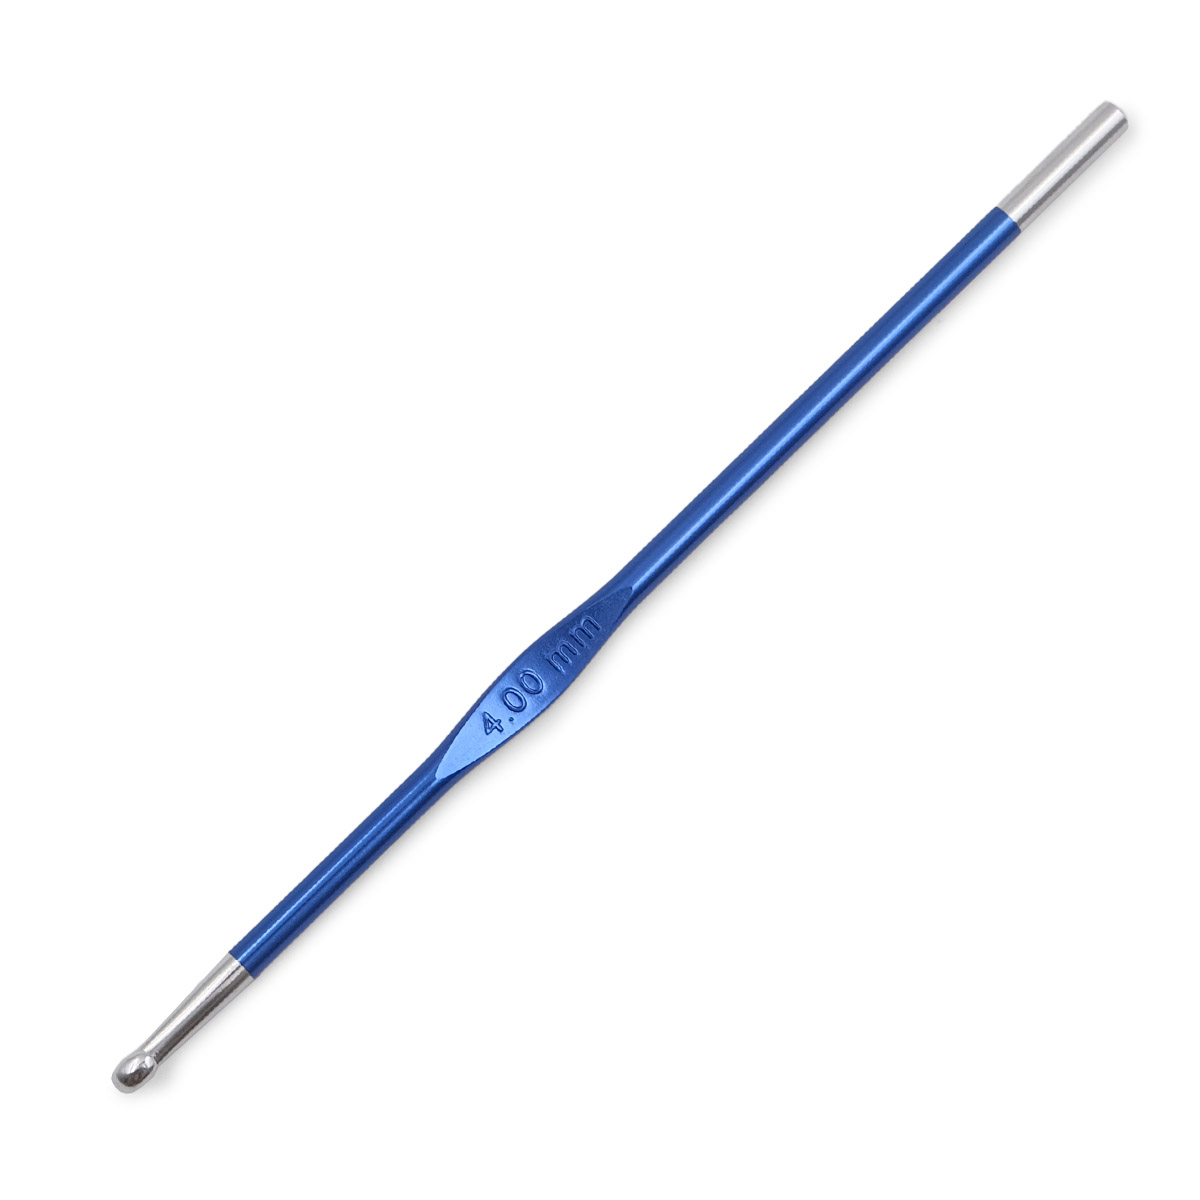 Крючок для вязания Zing 4мм, алюминий, сапфир темно-синий, KnitPro